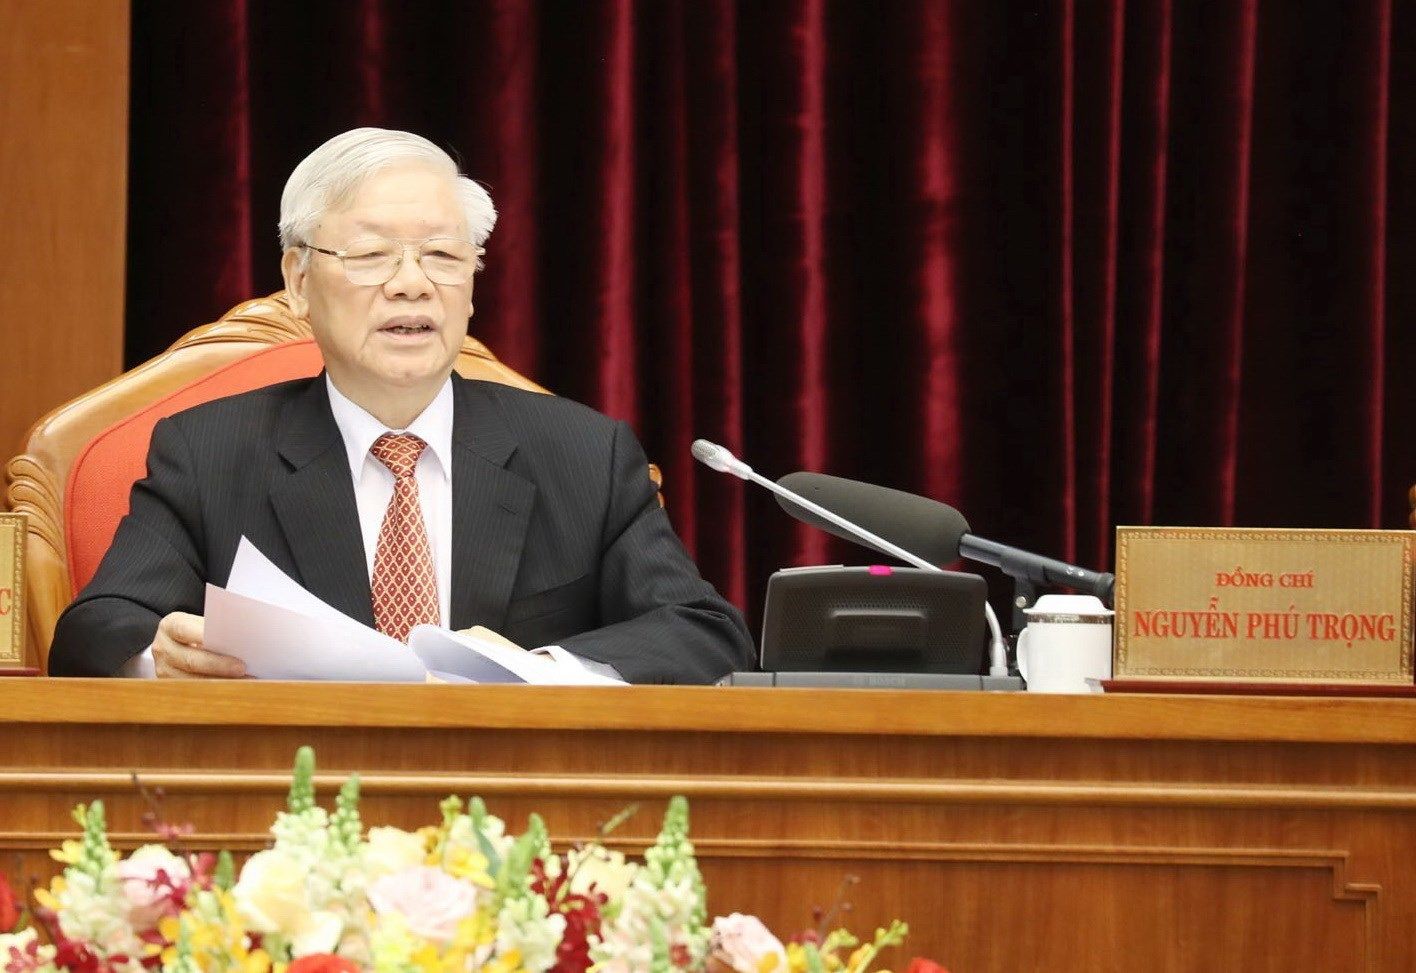 Phát biểu của Tổng Bí thư, Chủ tịch nước Nguyễn Phú Trọng khai mạc Hội nghị Trung ương 12